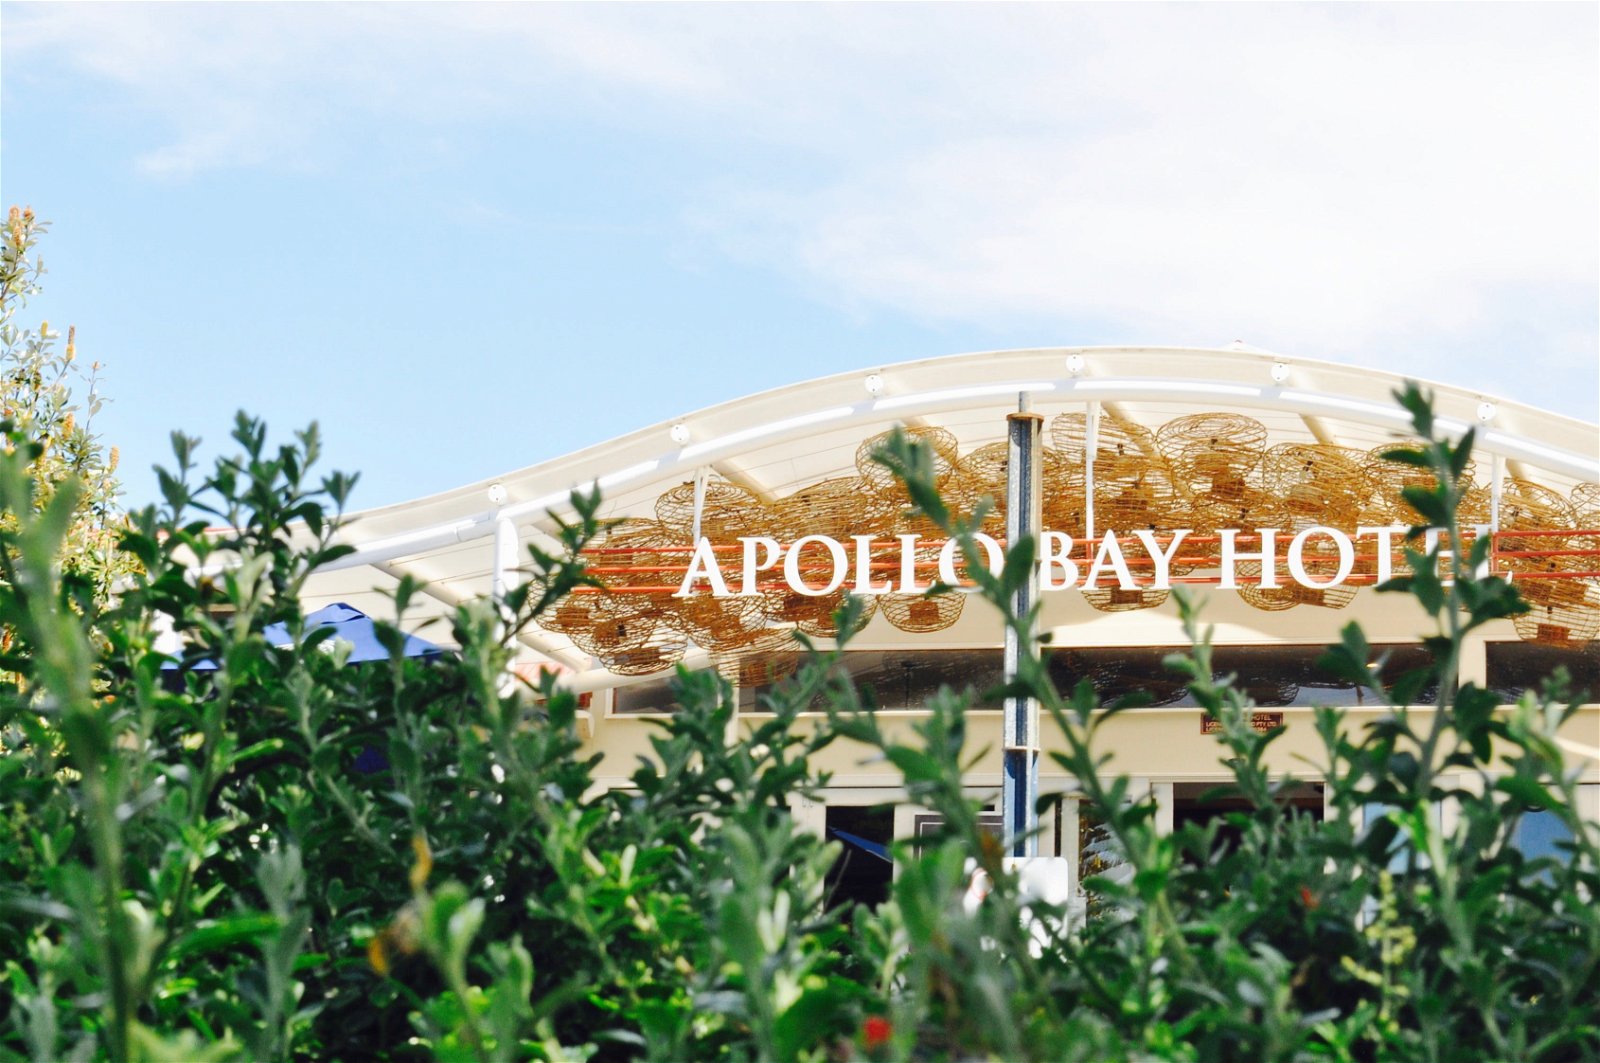 Apollo Bay Hotel - Broome Tourism